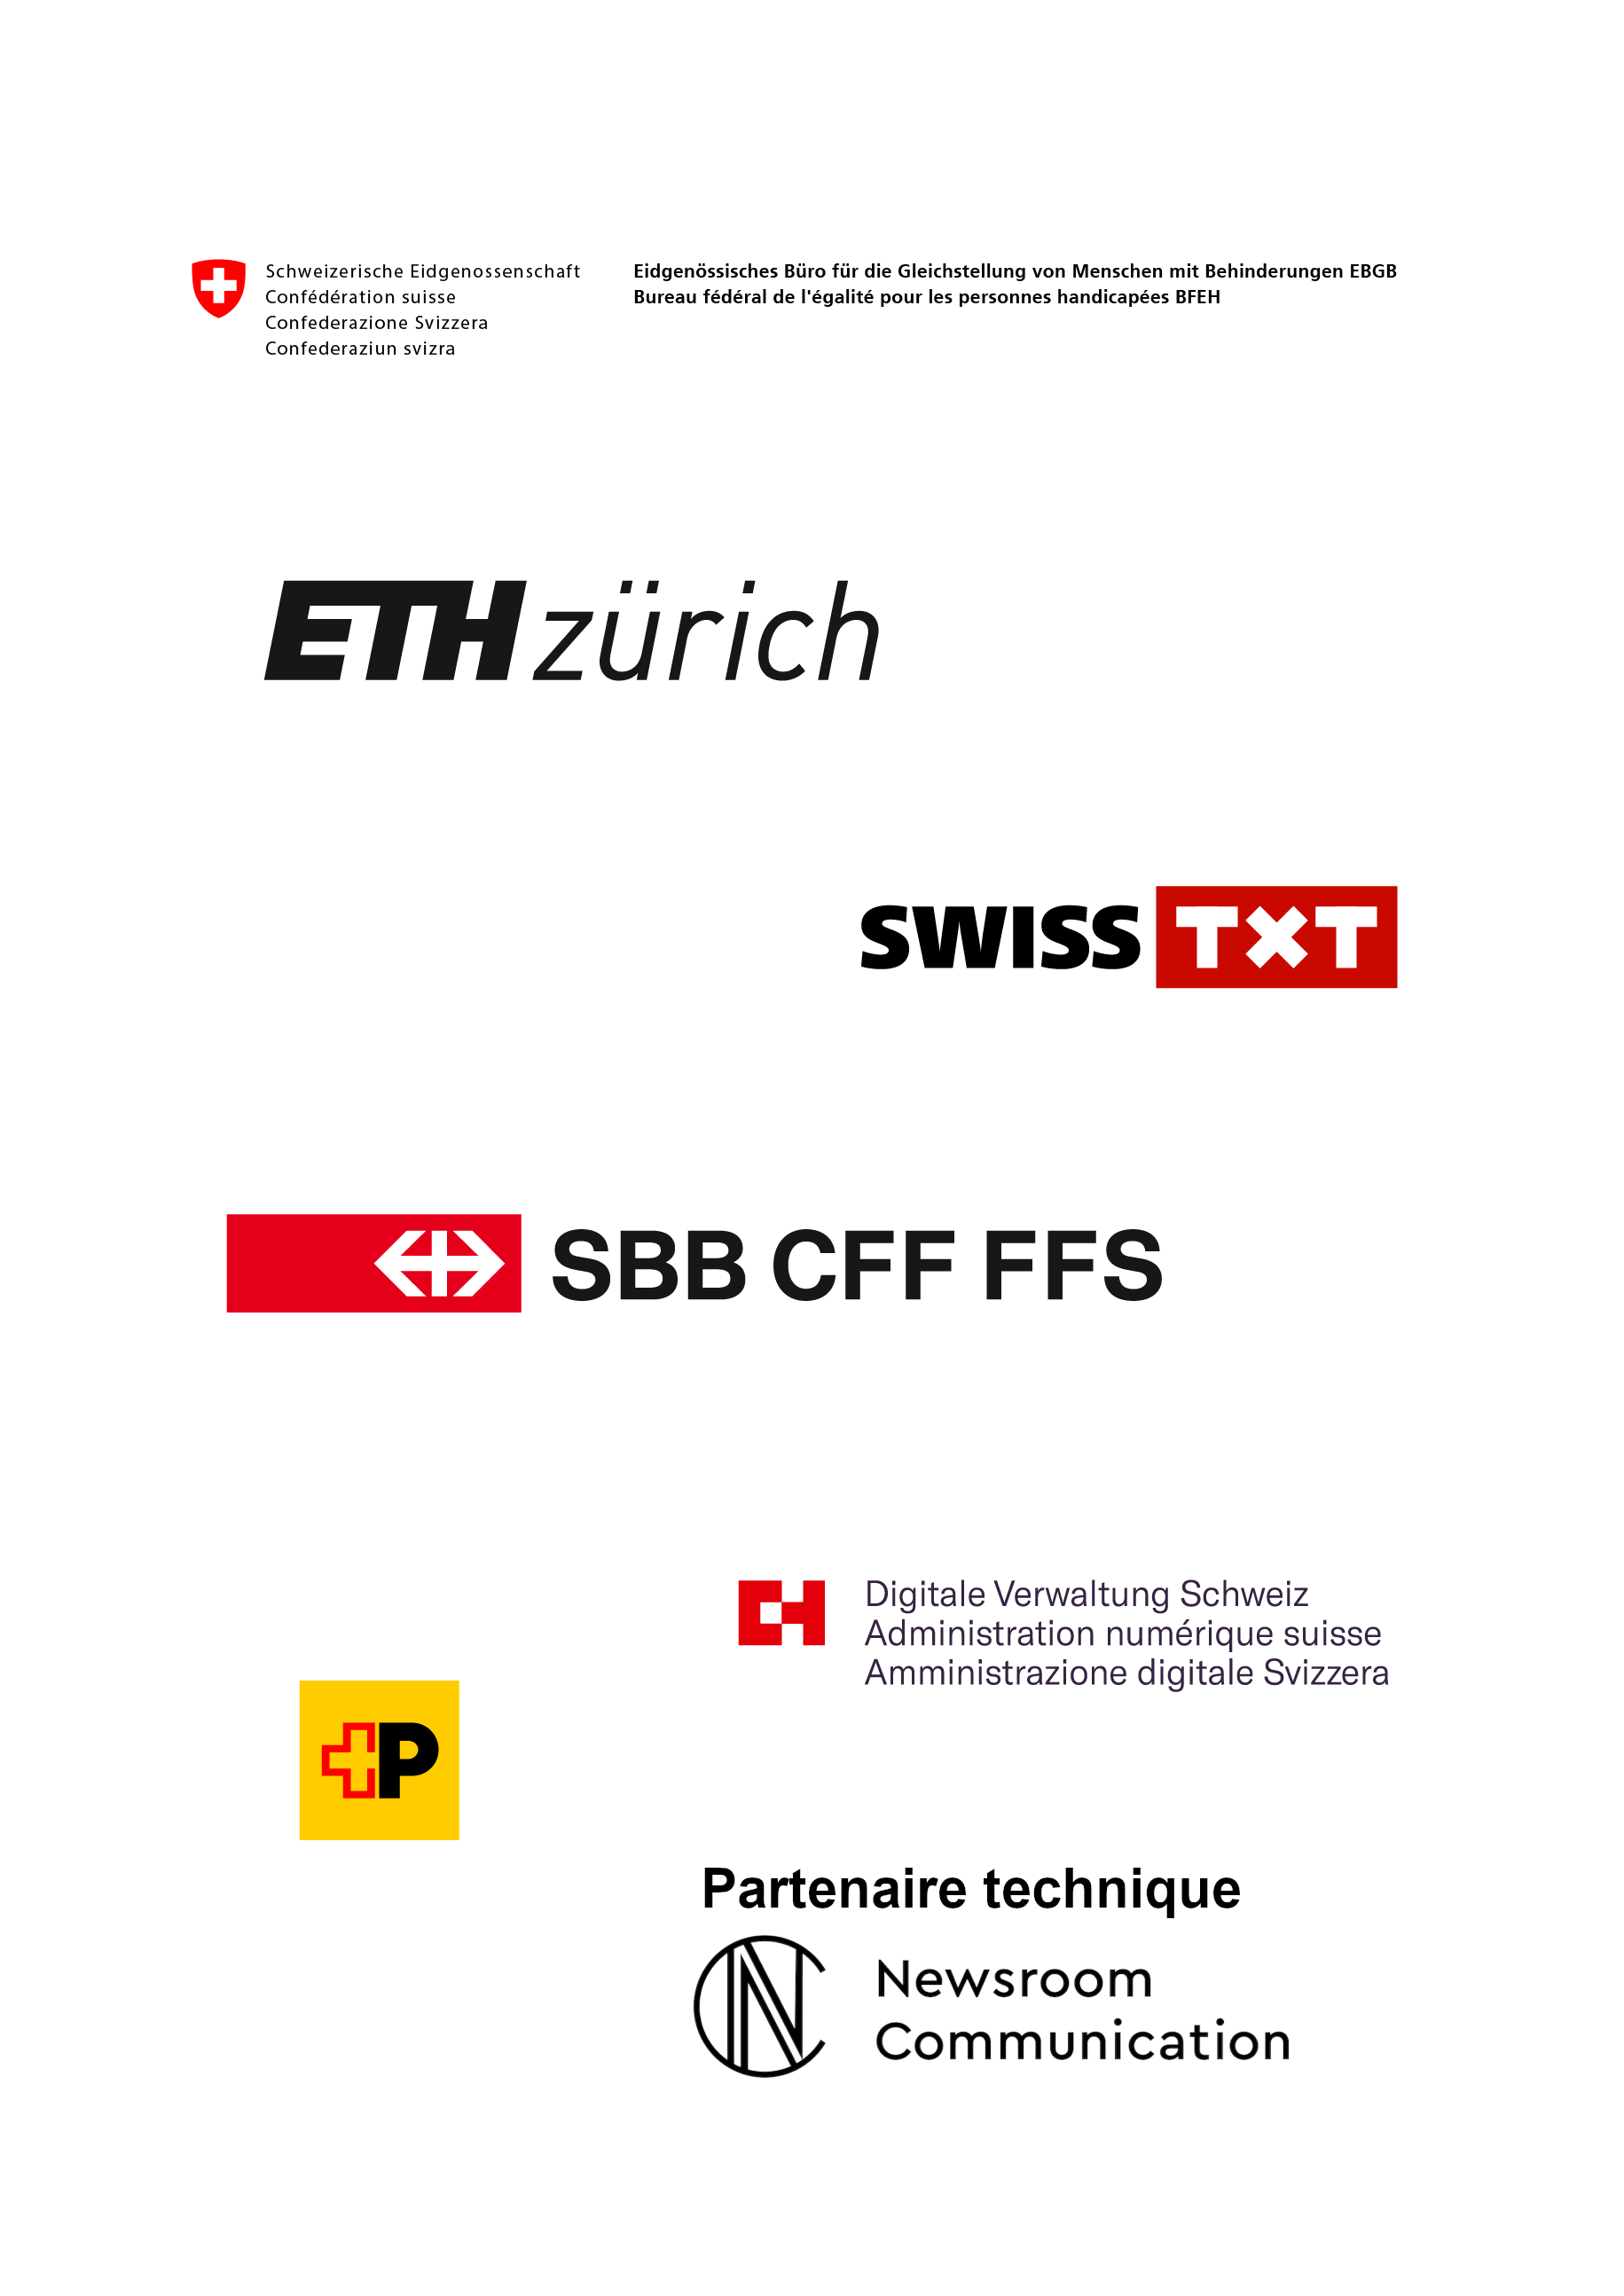 Organisation: Bureau fédéral de l’égalité pour les personnes handicapées, EPF Zurich, SWISS TXT, Poste CH, CFF, Administration numérique suisse